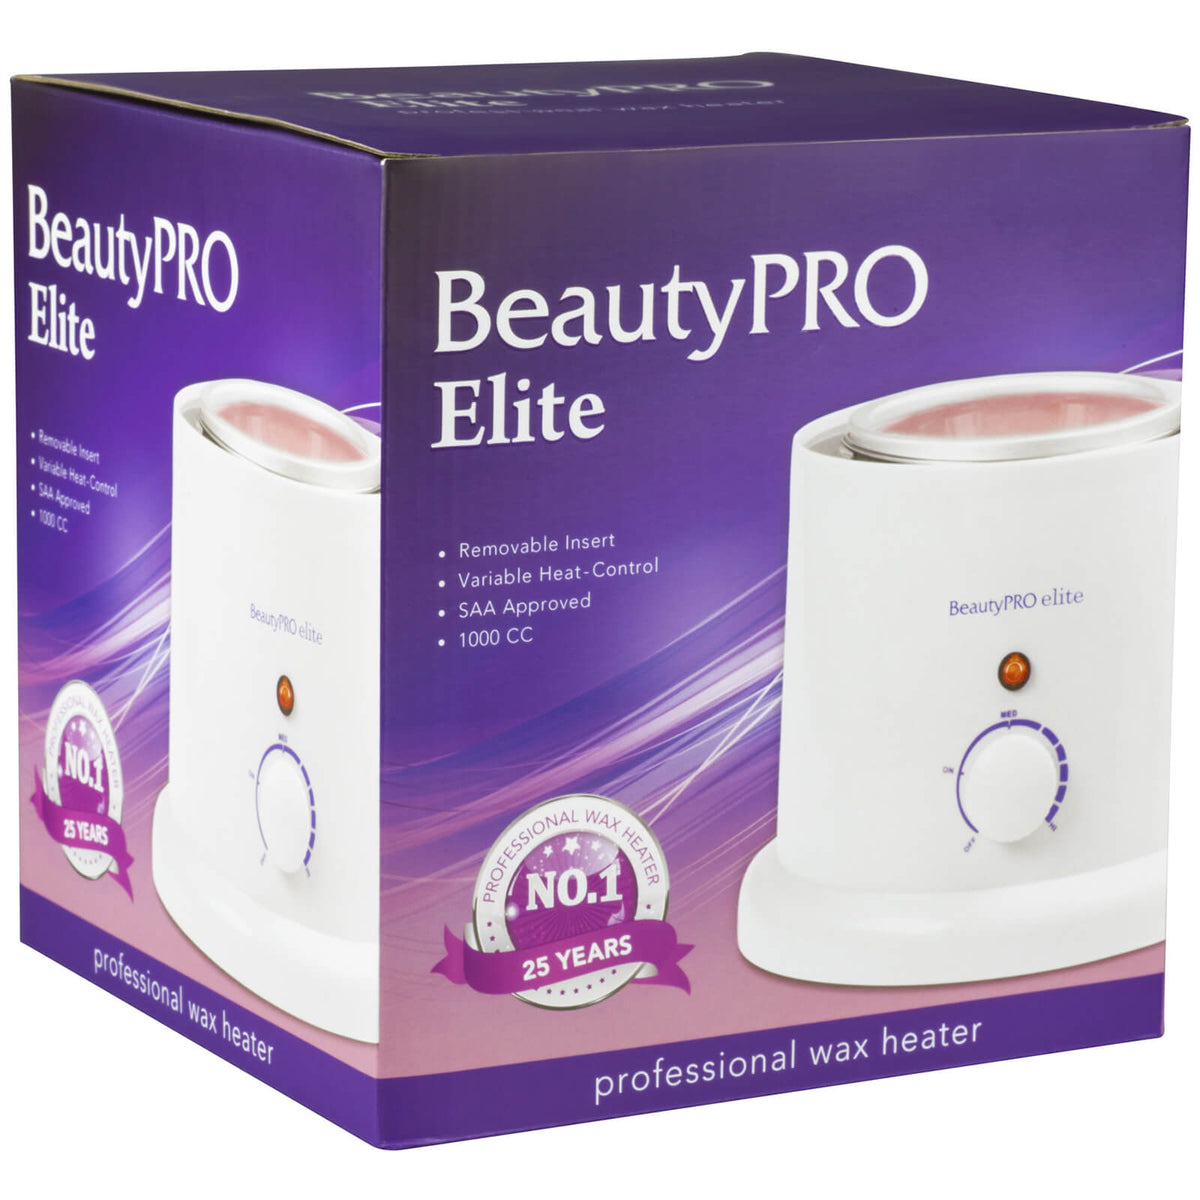 Beauty Pro Elite Professional Wax Heater